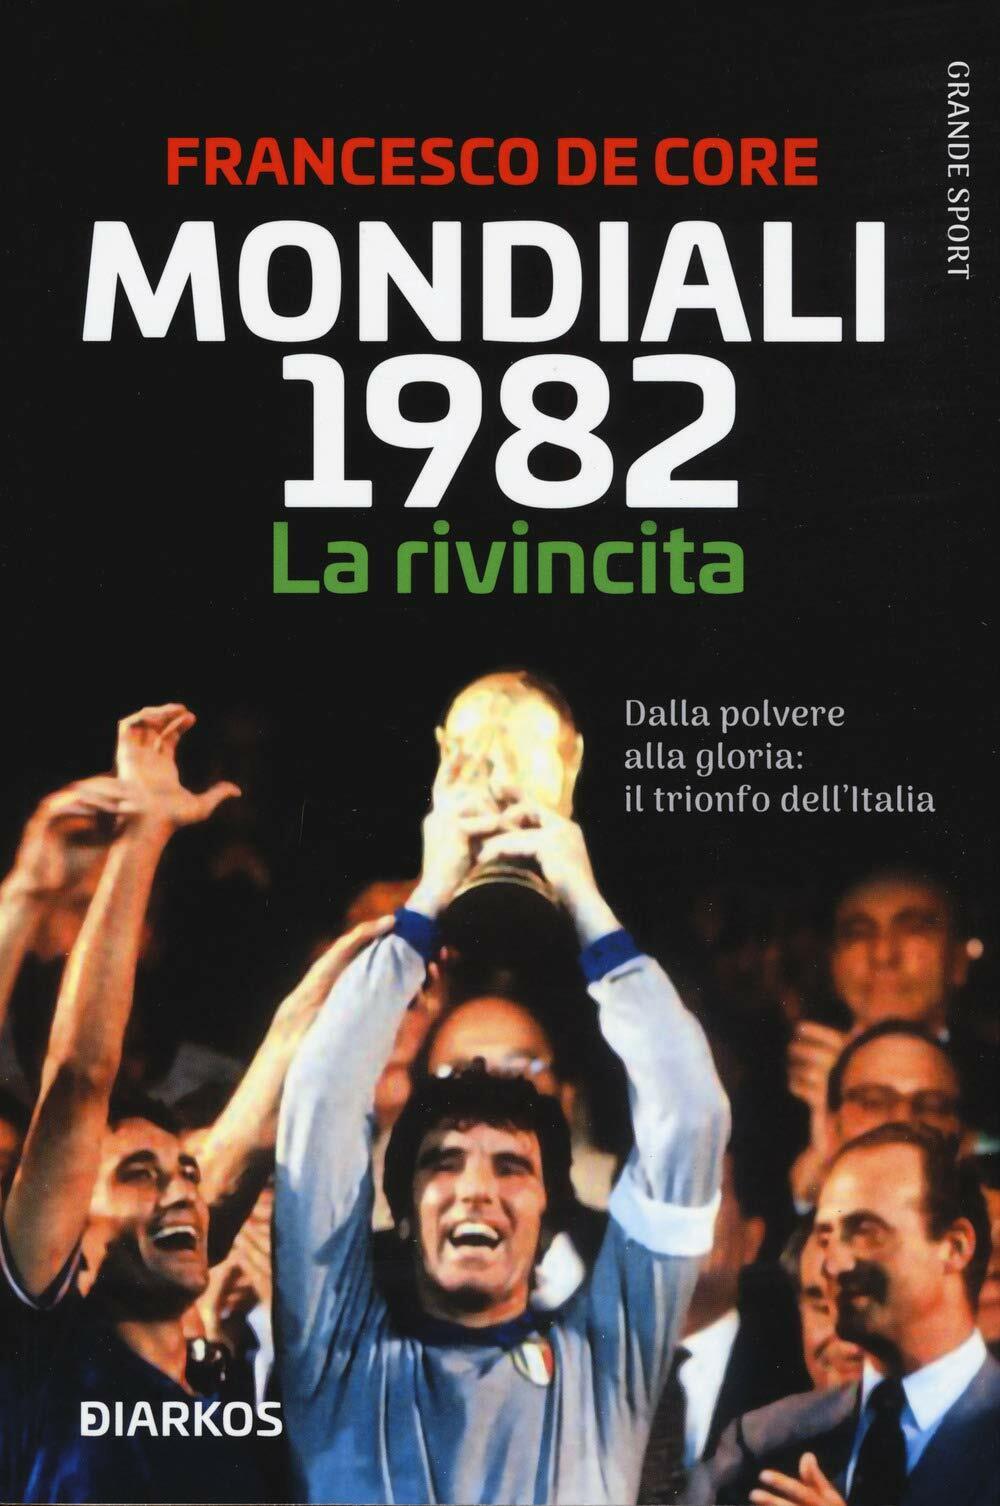 Mondiali 1982. La rivincita - Francesco De Core - Diarkos, 2020 libro usato